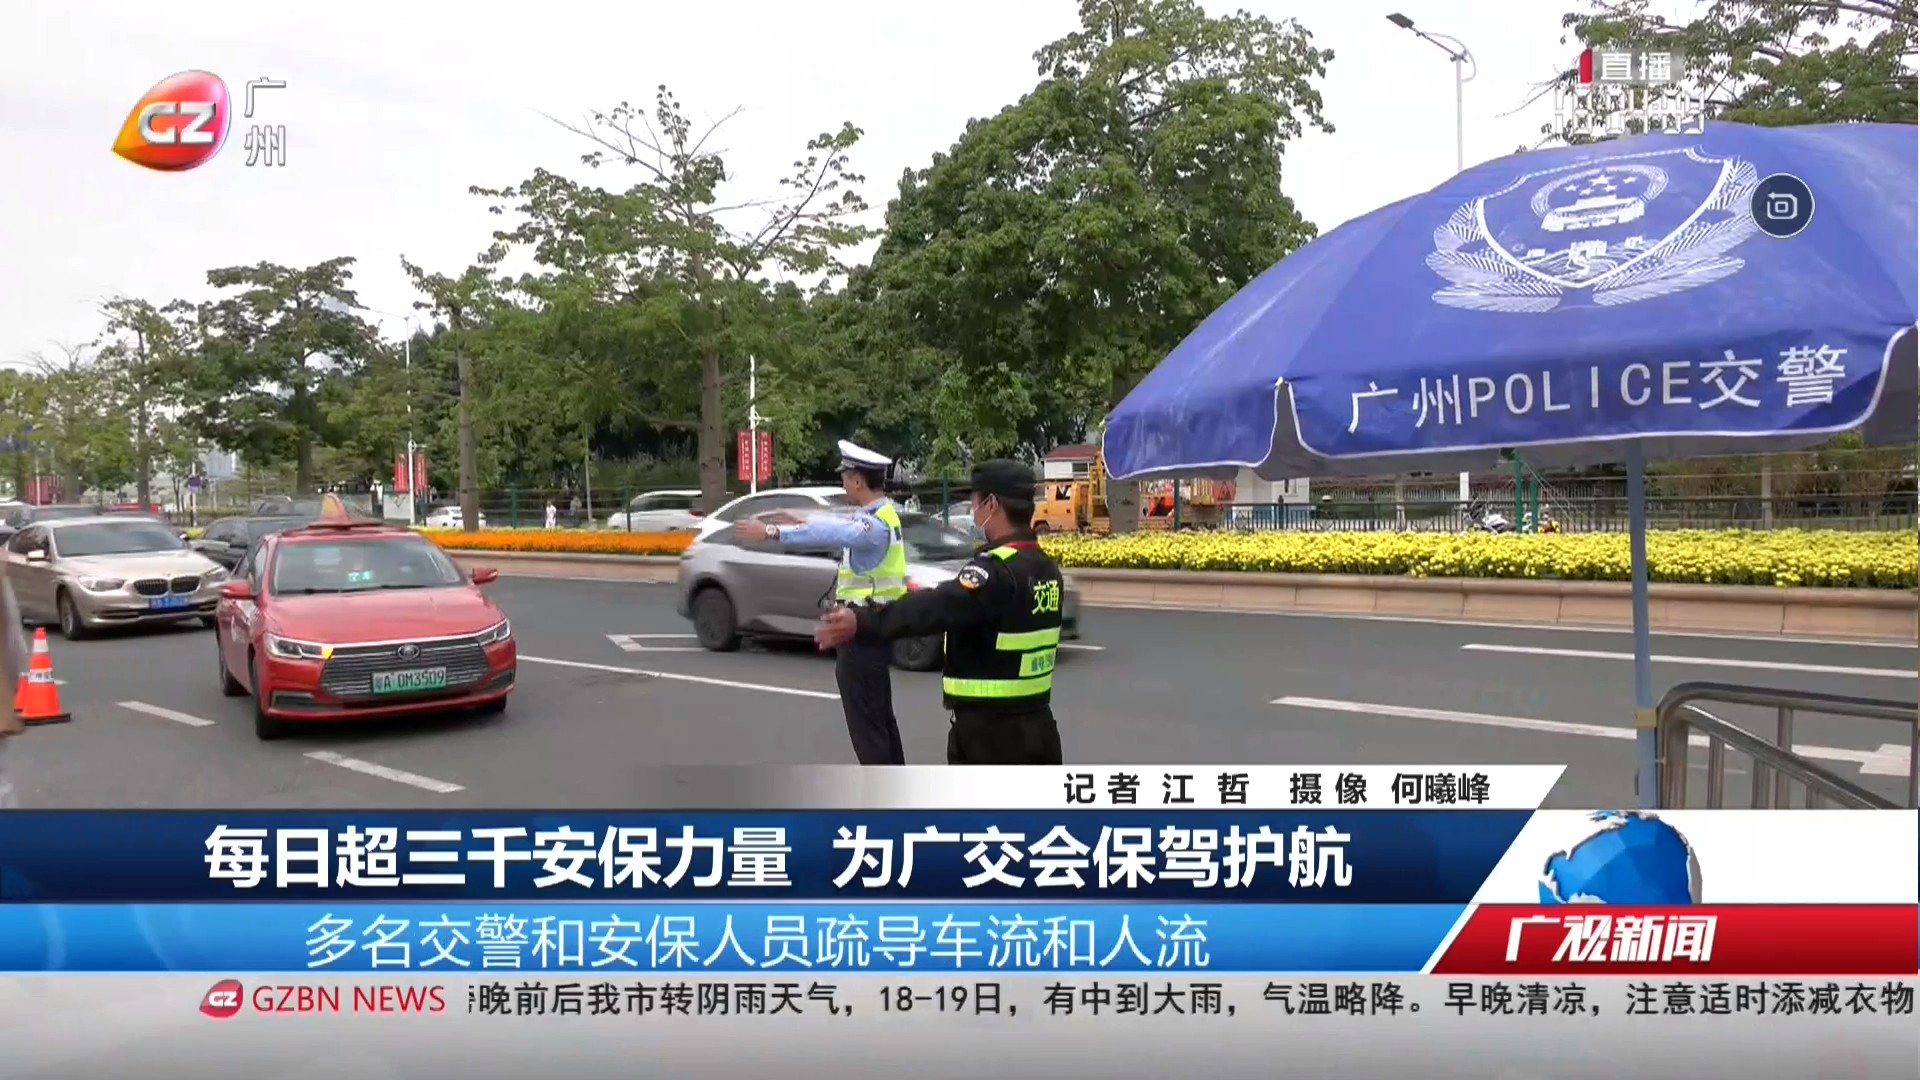 广州台综合频道 广视新闻 每日超三千安保力量 为广交会保驾护航